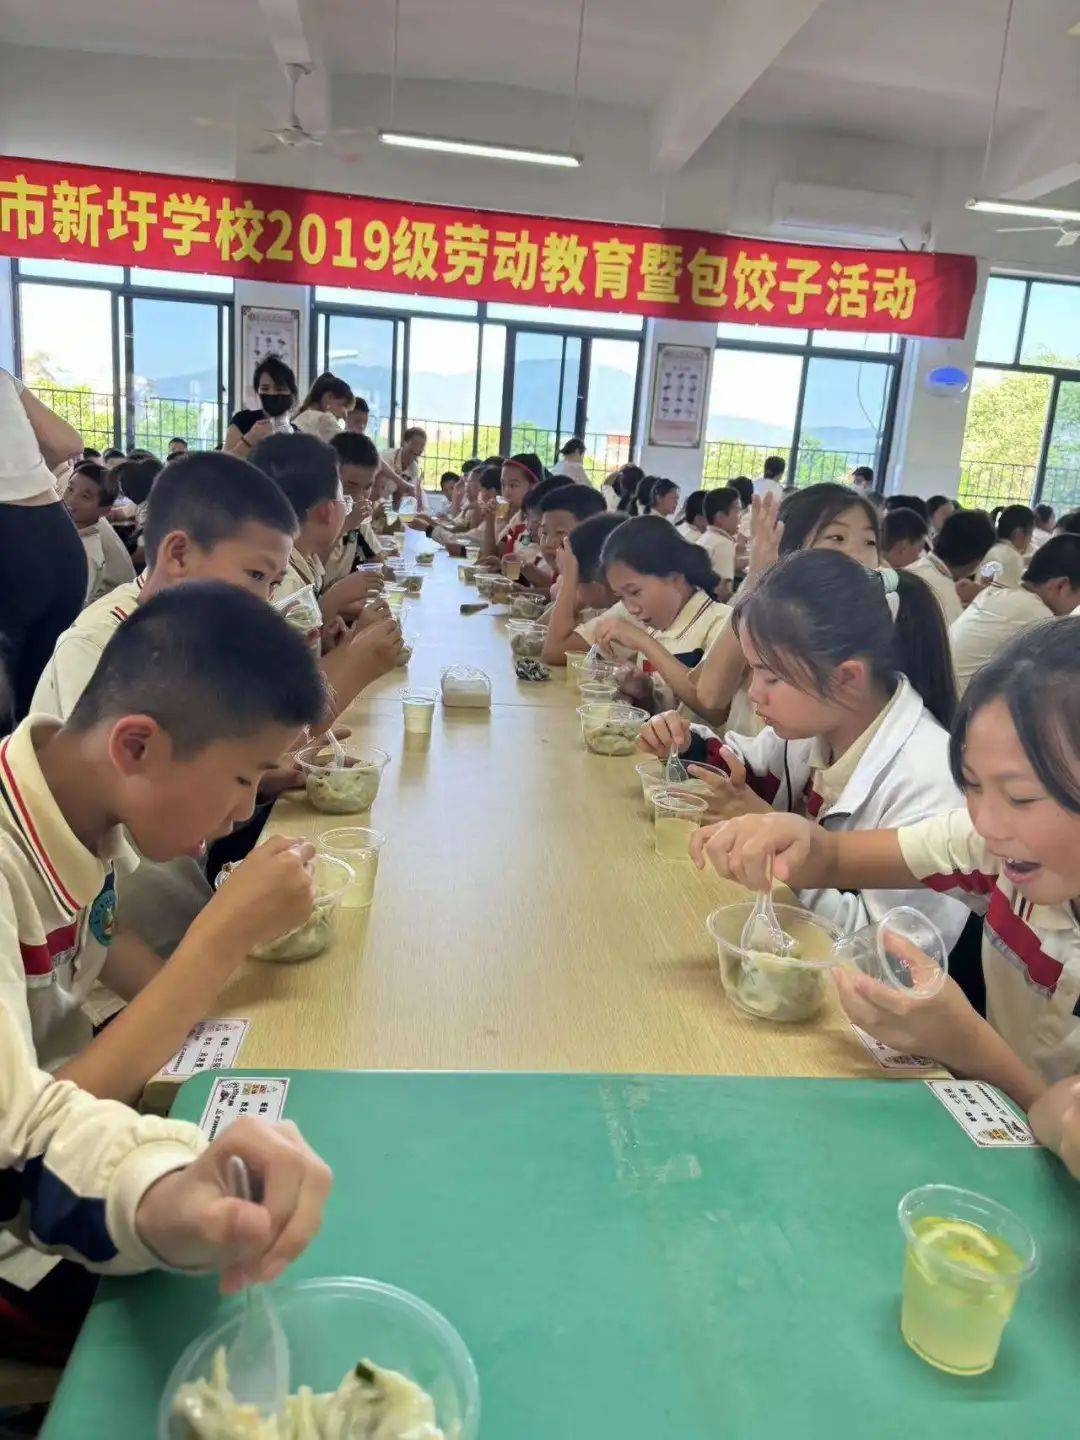 同样的节日 别样的快乐——厦门市新圩学校五年级开展包饺子 庆六一